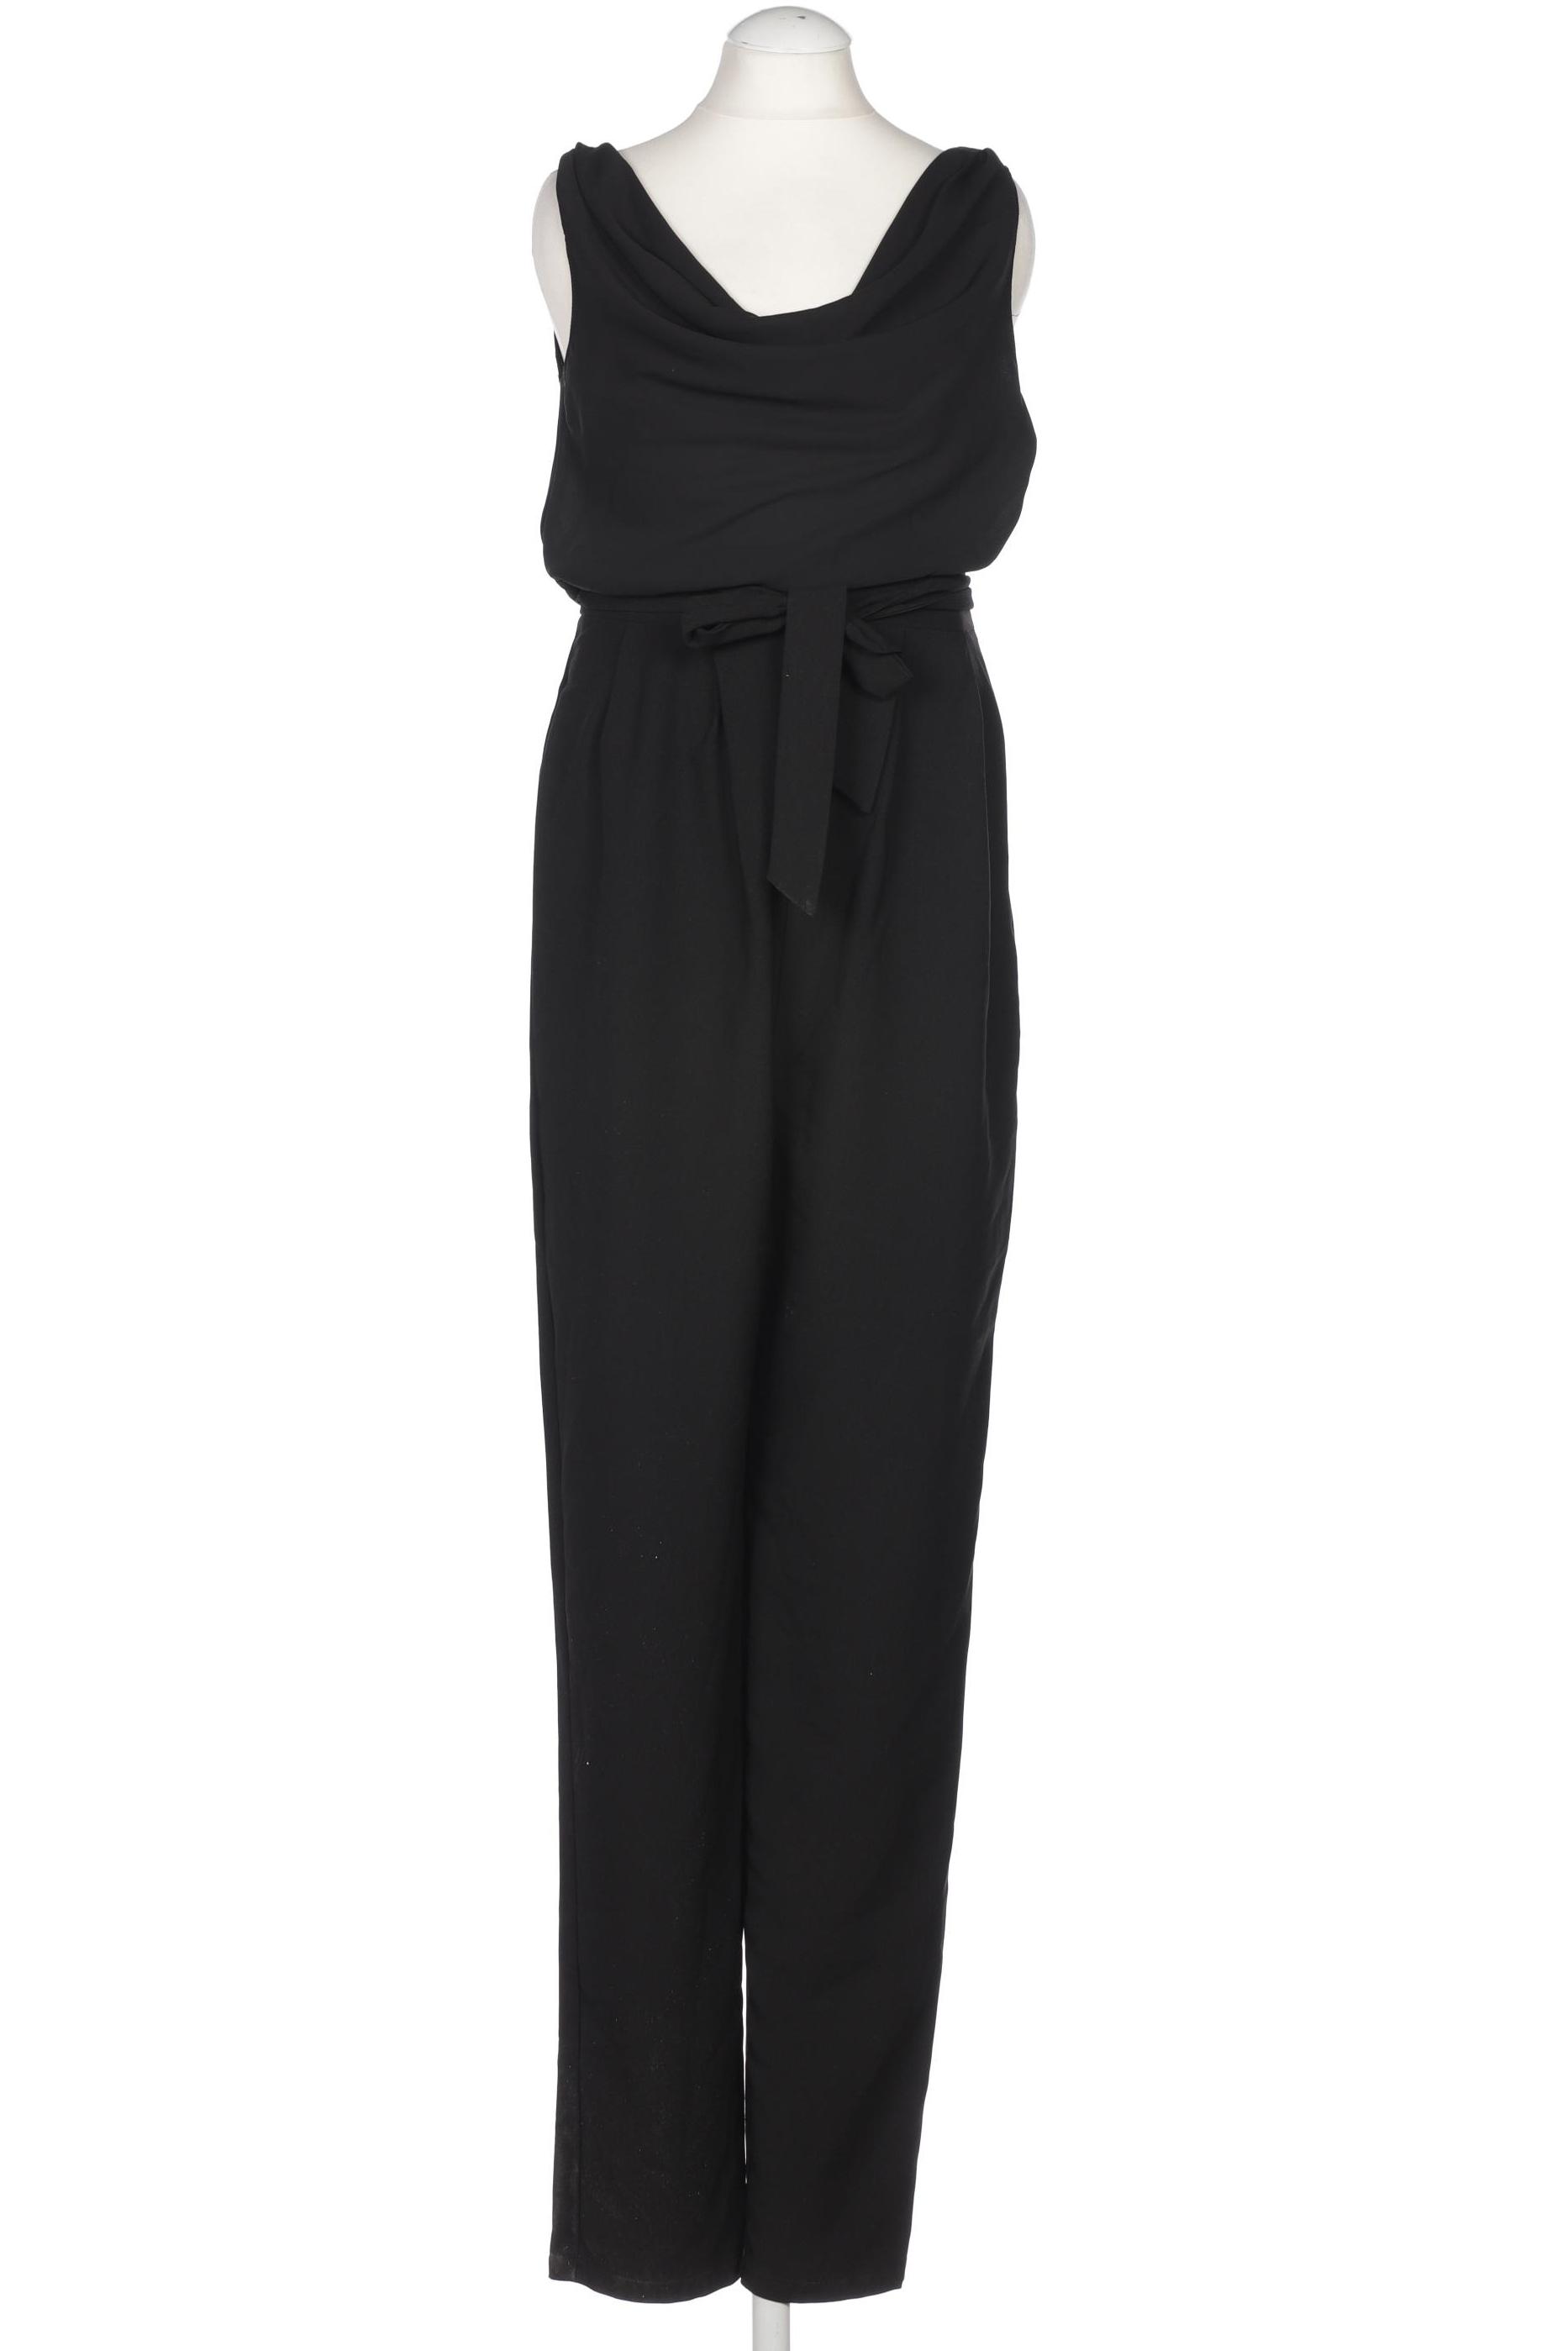 asos Damen Jumpsuit/Overall, schwarz, Gr. 34 von asos